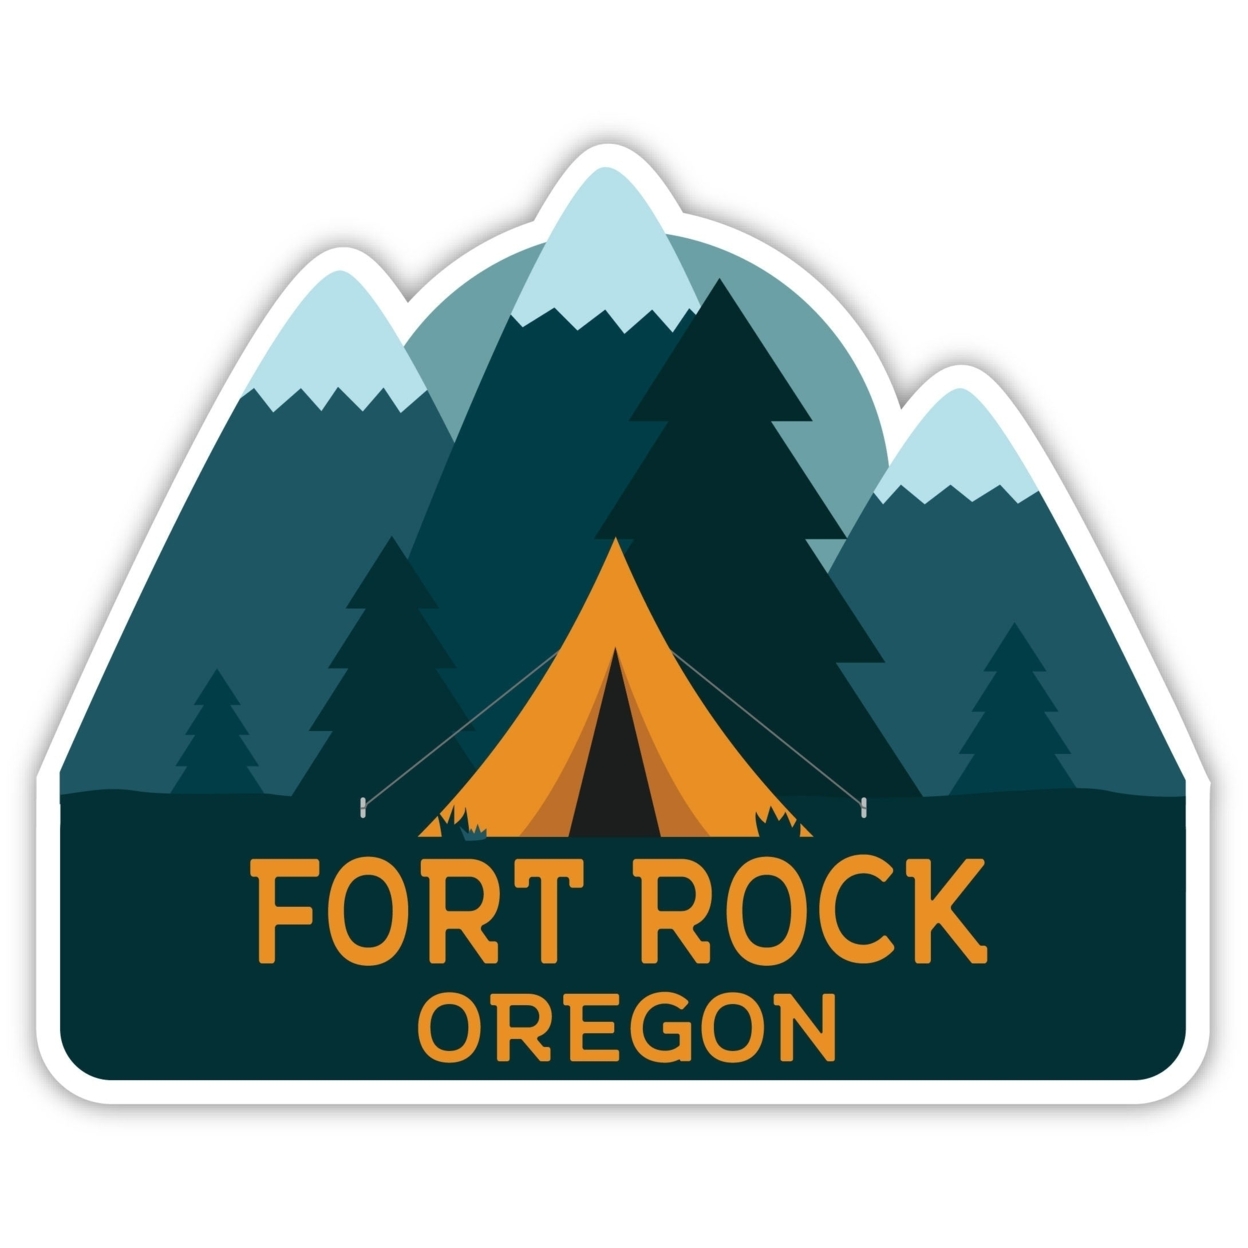 Fort Rock Oregon Souvenir Decorative Stickers (Choose Theme And Size) - Single Unit, 2-Inch, Tent